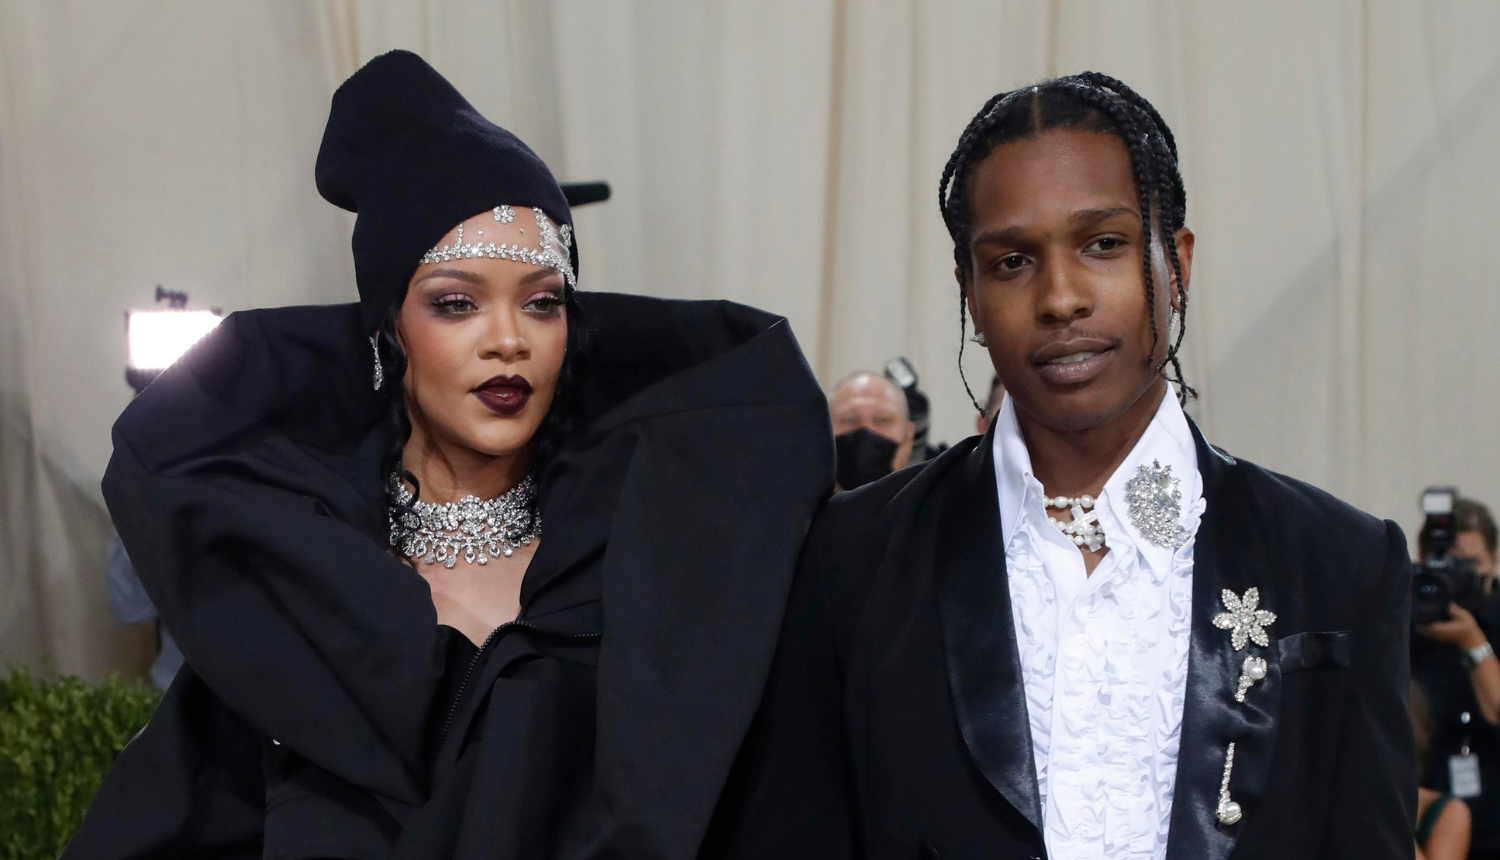 Rihanna i A$AP Rocky još uvijek ne žele objaviti fotku ni ime sina. Pjevačica objasnila zašto